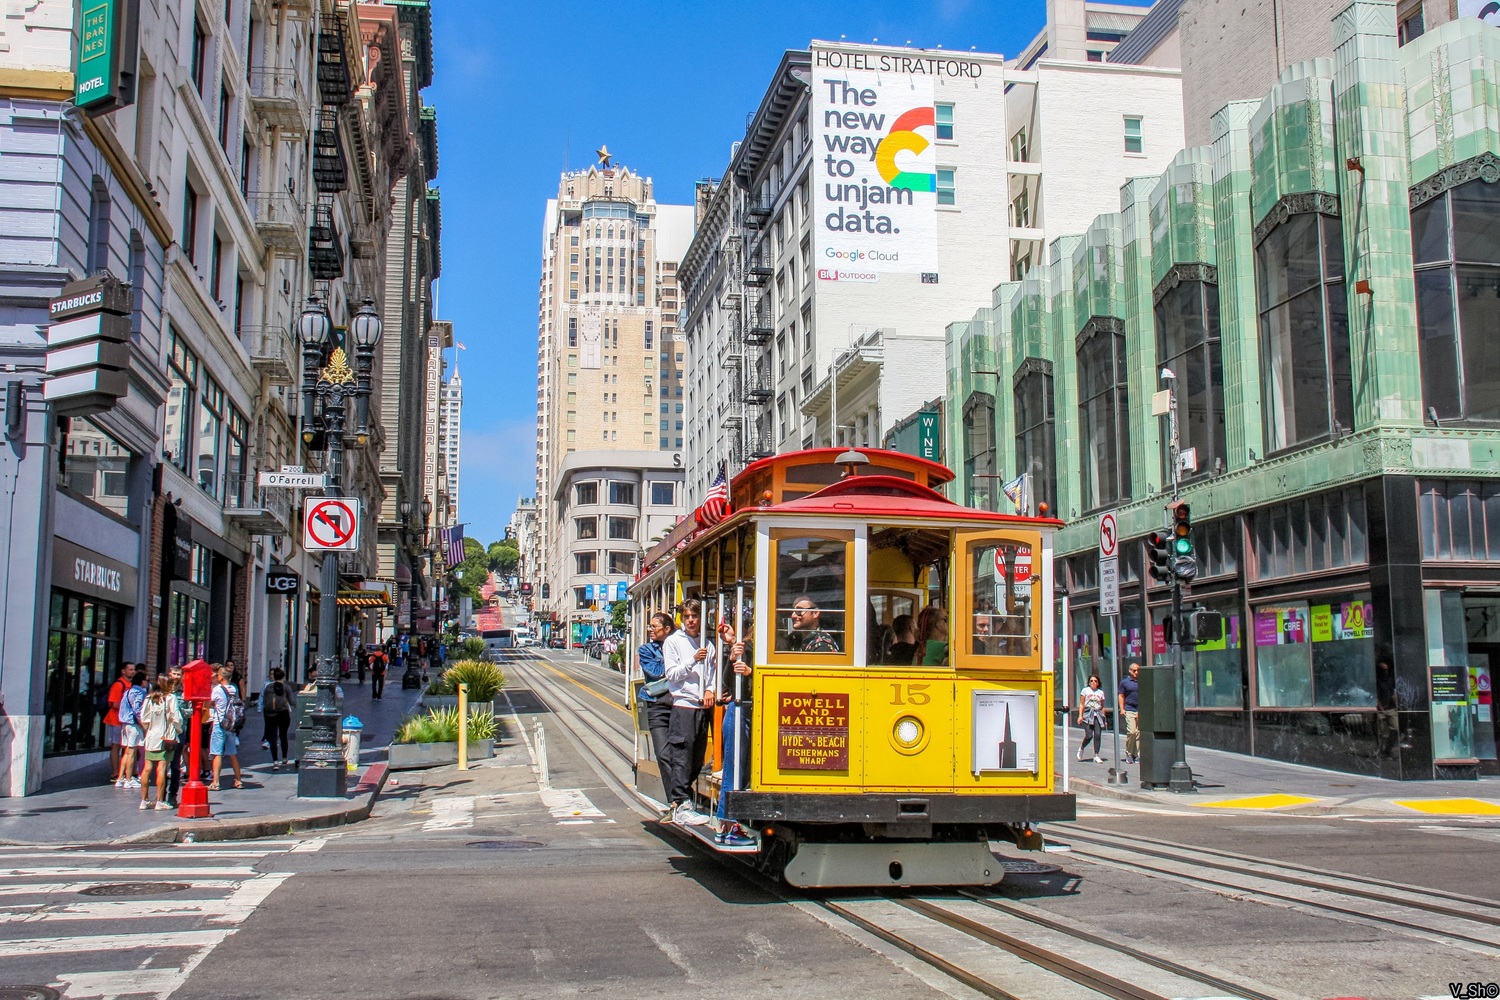 Сан-Франциско, область залива, Muni cable car № 15; Сан-Франциско, область залива — Линии и инфраструктура кабельного трамвая